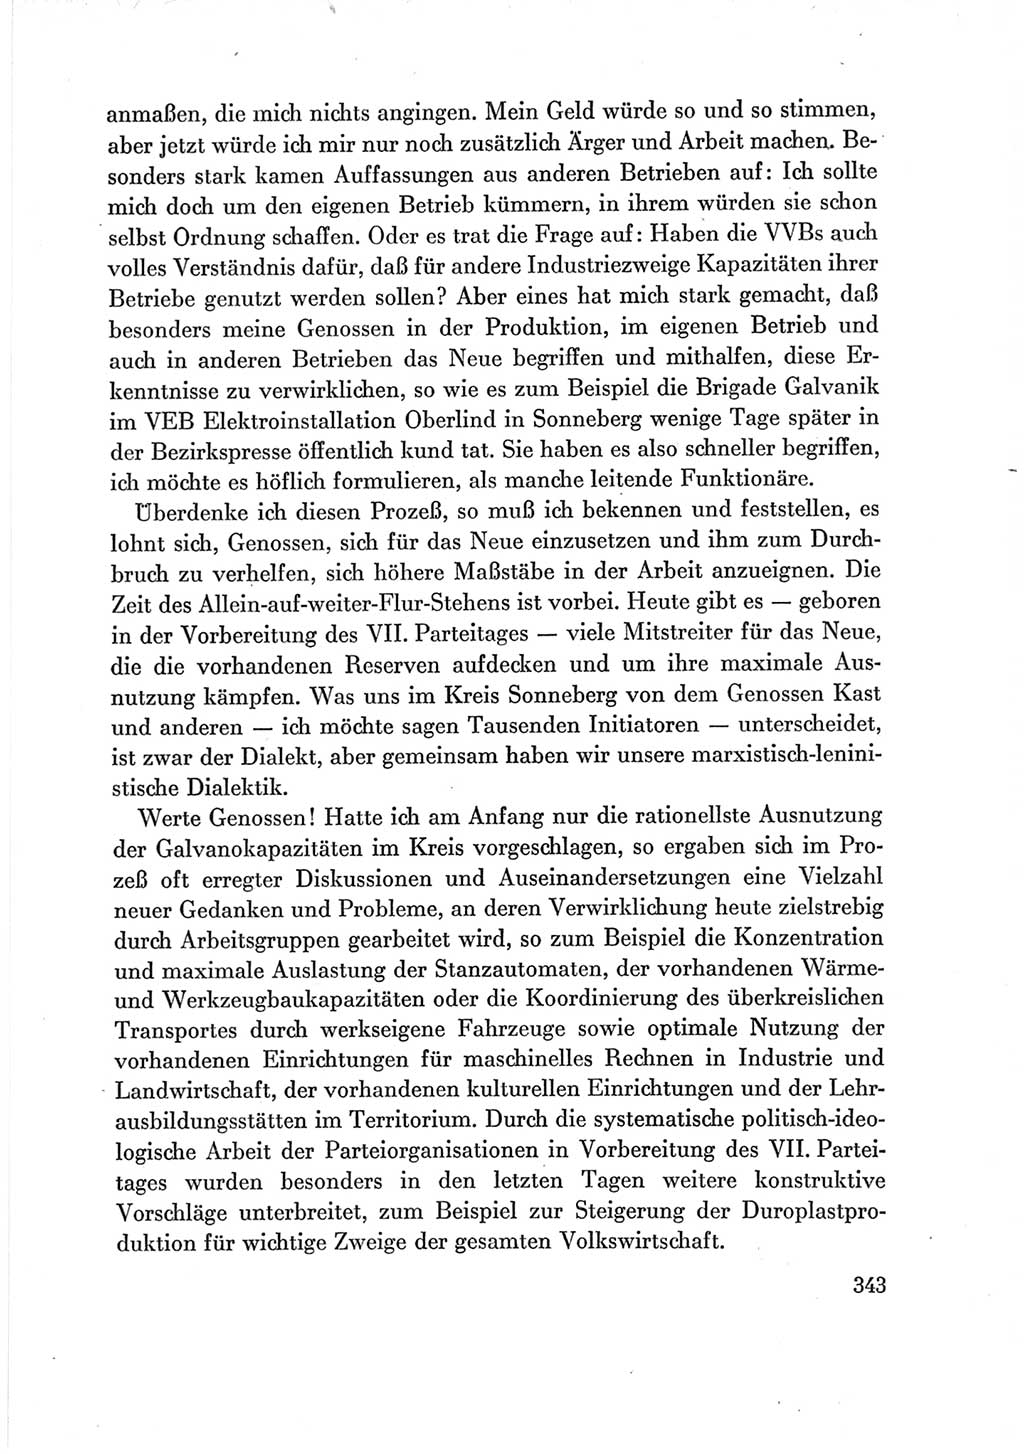 Protokoll der Verhandlungen des Ⅶ. Parteitages der Sozialistischen Einheitspartei Deutschlands (SED) [Deutsche Demokratische Republik (DDR)] 1967, Band Ⅲ, Seite 343 (Prot. Verh. Ⅶ. PT SED DDR 1967, Bd. Ⅲ, S. 343)